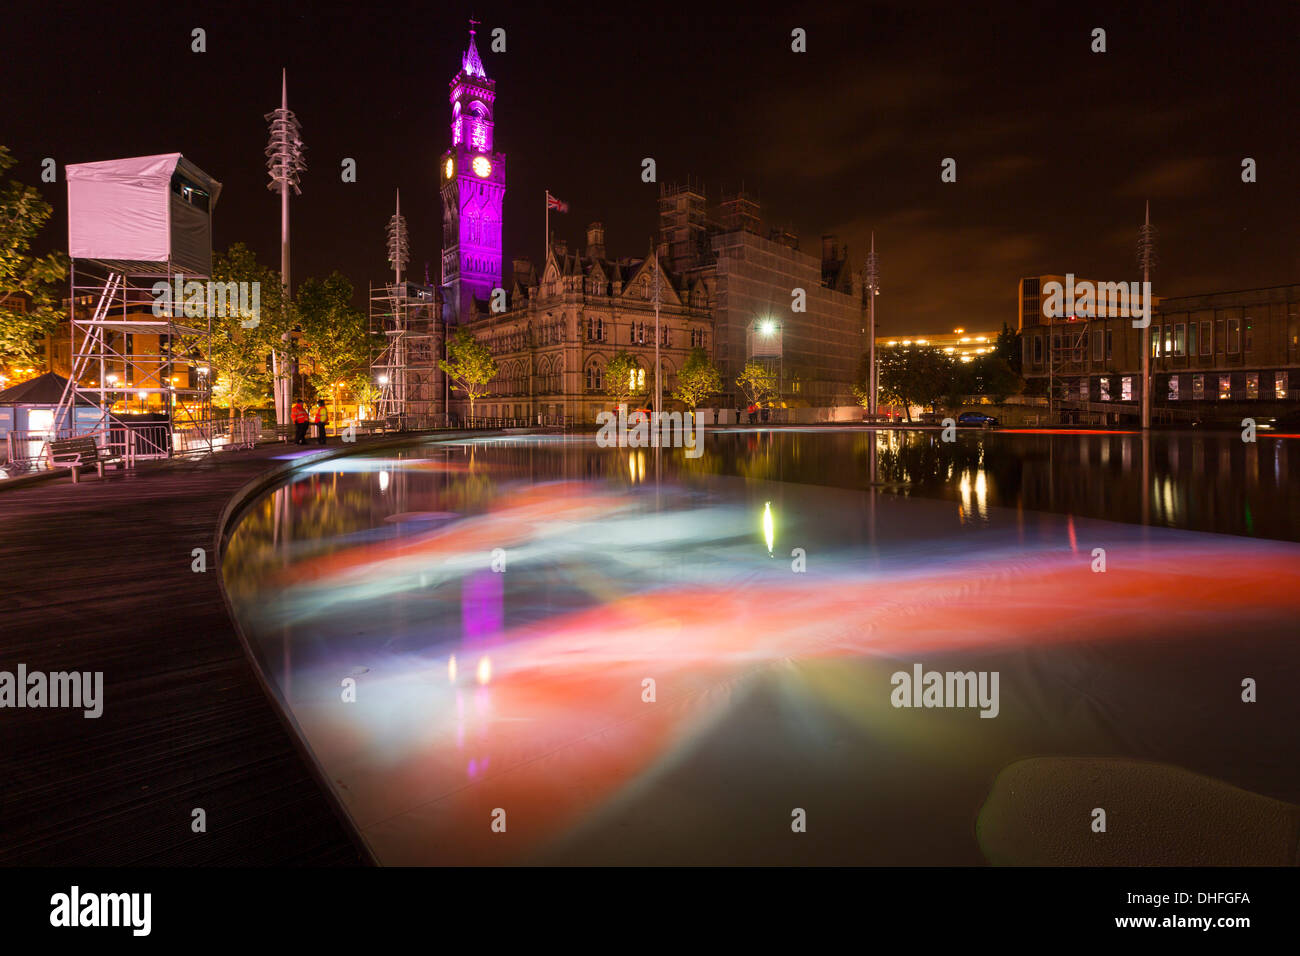 Eine gespiegelte Pool gedacht in Bradford City Park, von Shanaz Gulzar und Steve Manthorp, ein Kunstwerk der projizierten Bilder auf der w Stockfoto